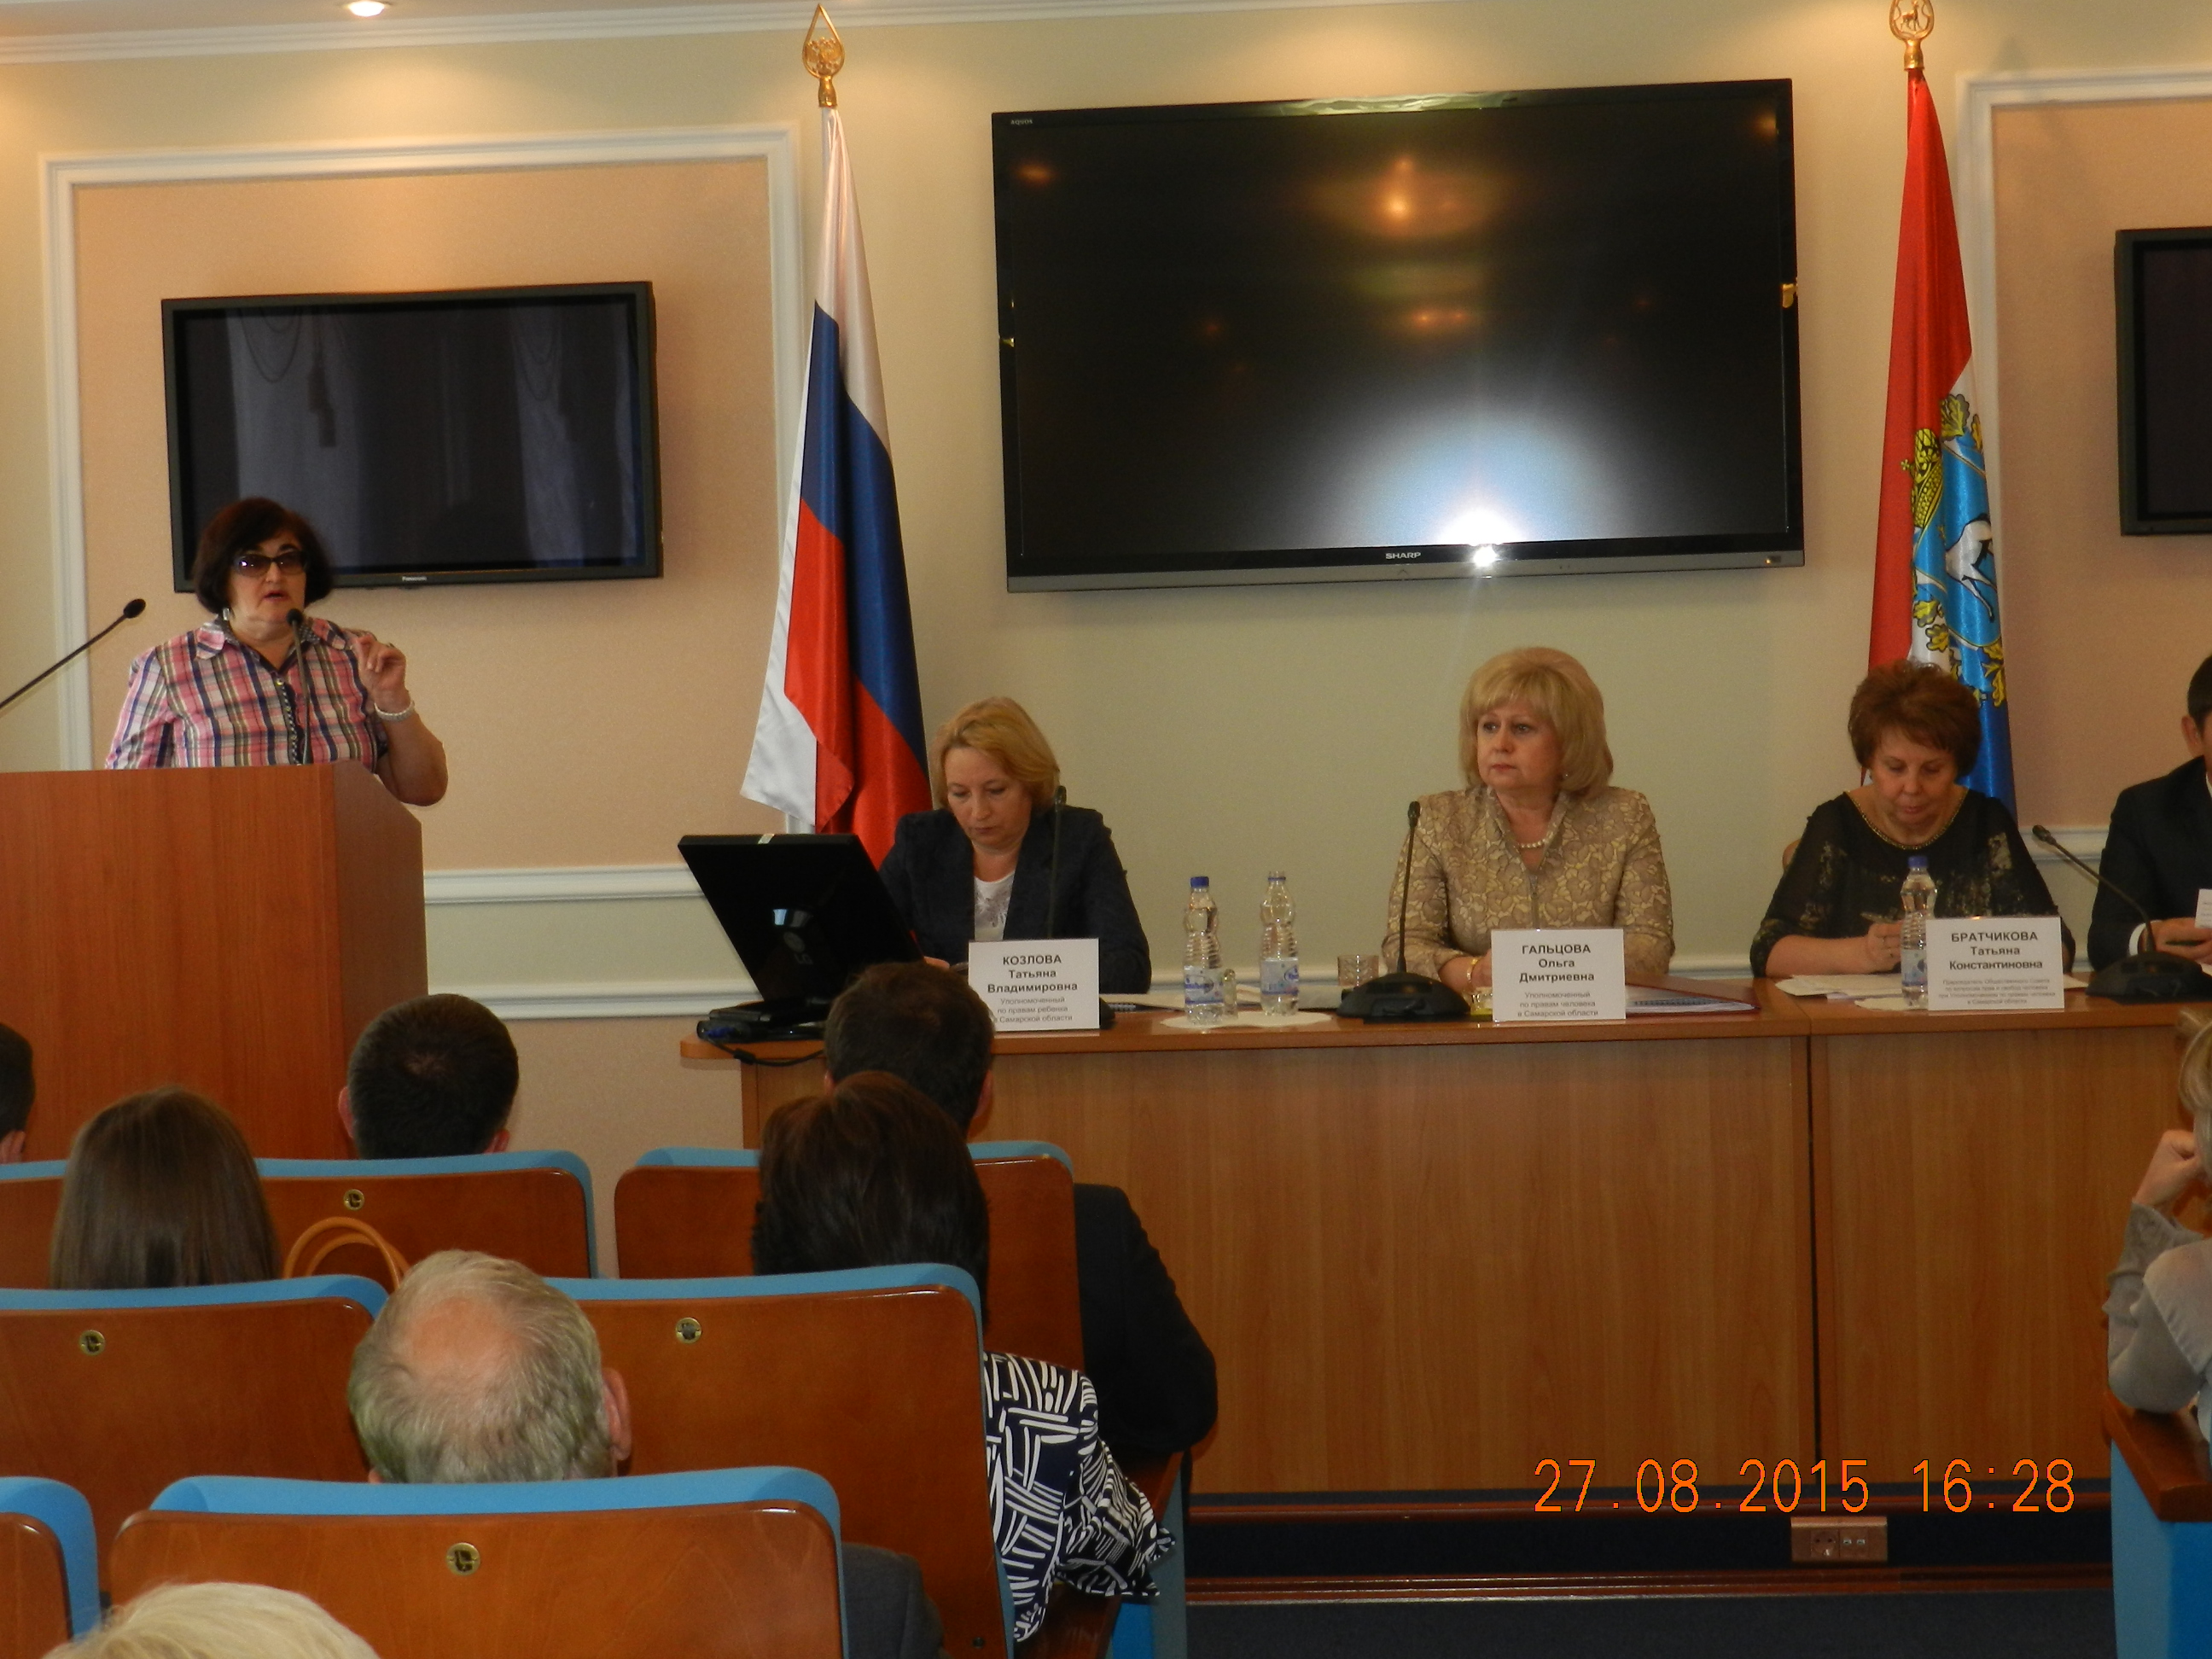 Расширенное заседание Общественного Совета и Экспертного совета по вопросам прав и свобод при Уполномоченном по правам человека в Самарской области